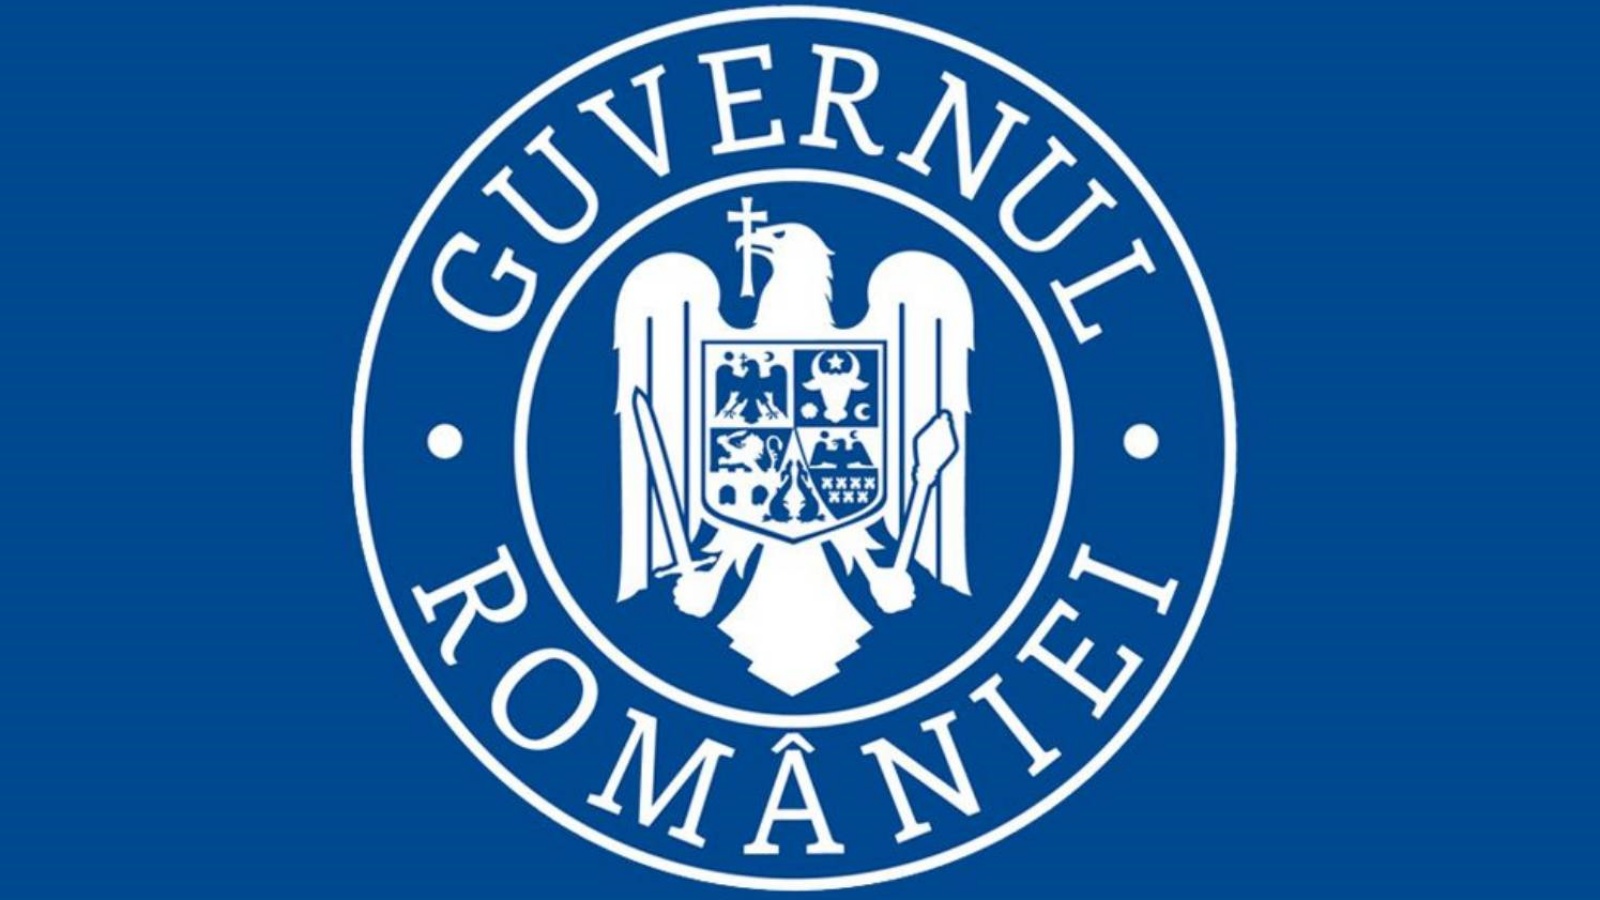 El Gobierno rumano ha vacunado hasta ahora a 5.8 millones de rumanos